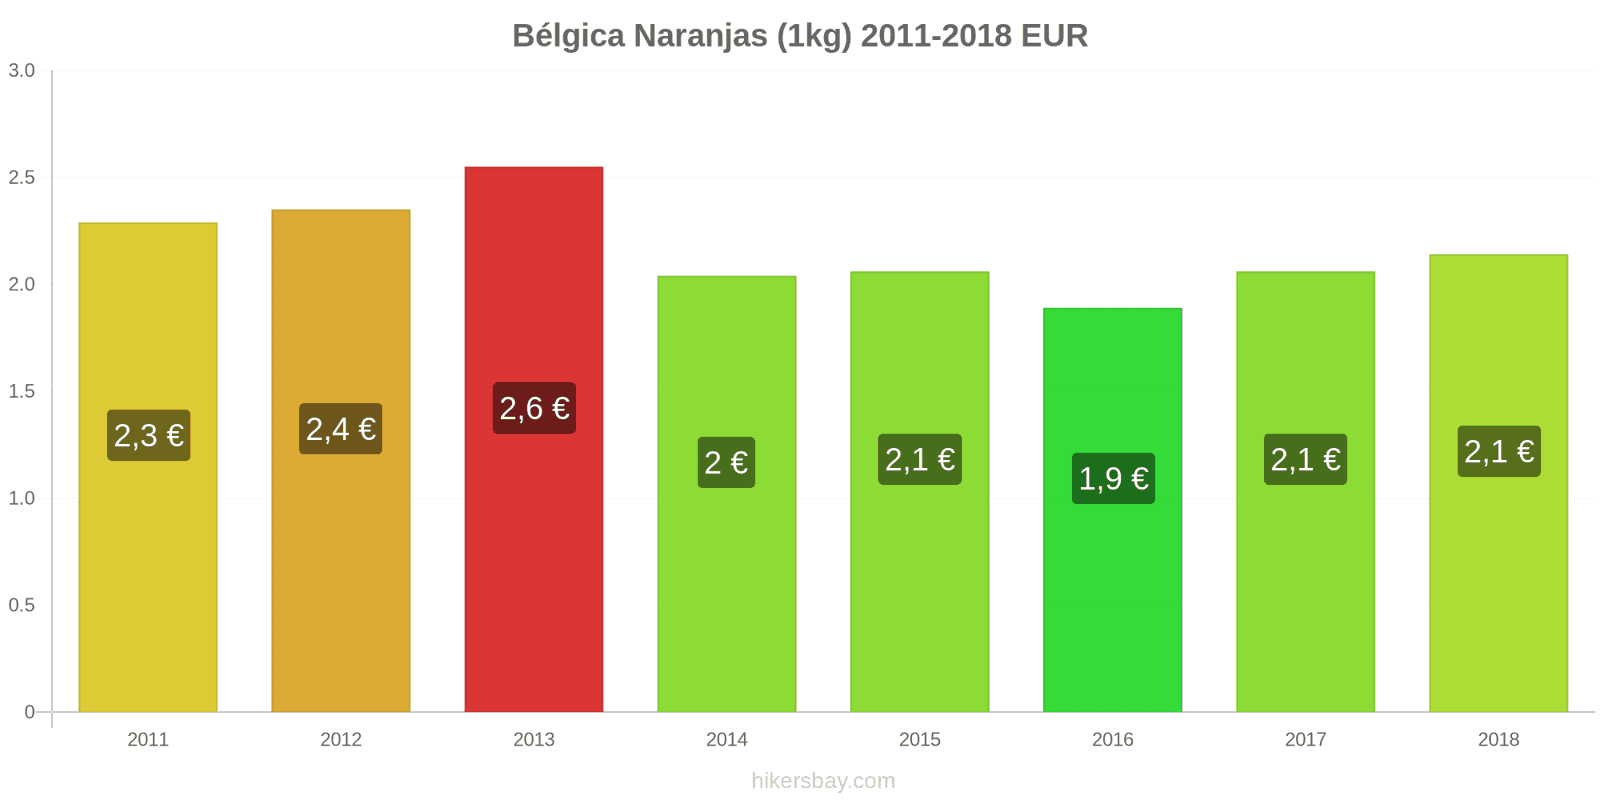 Bélgica cambios de precios Naranjas (1kg) hikersbay.com